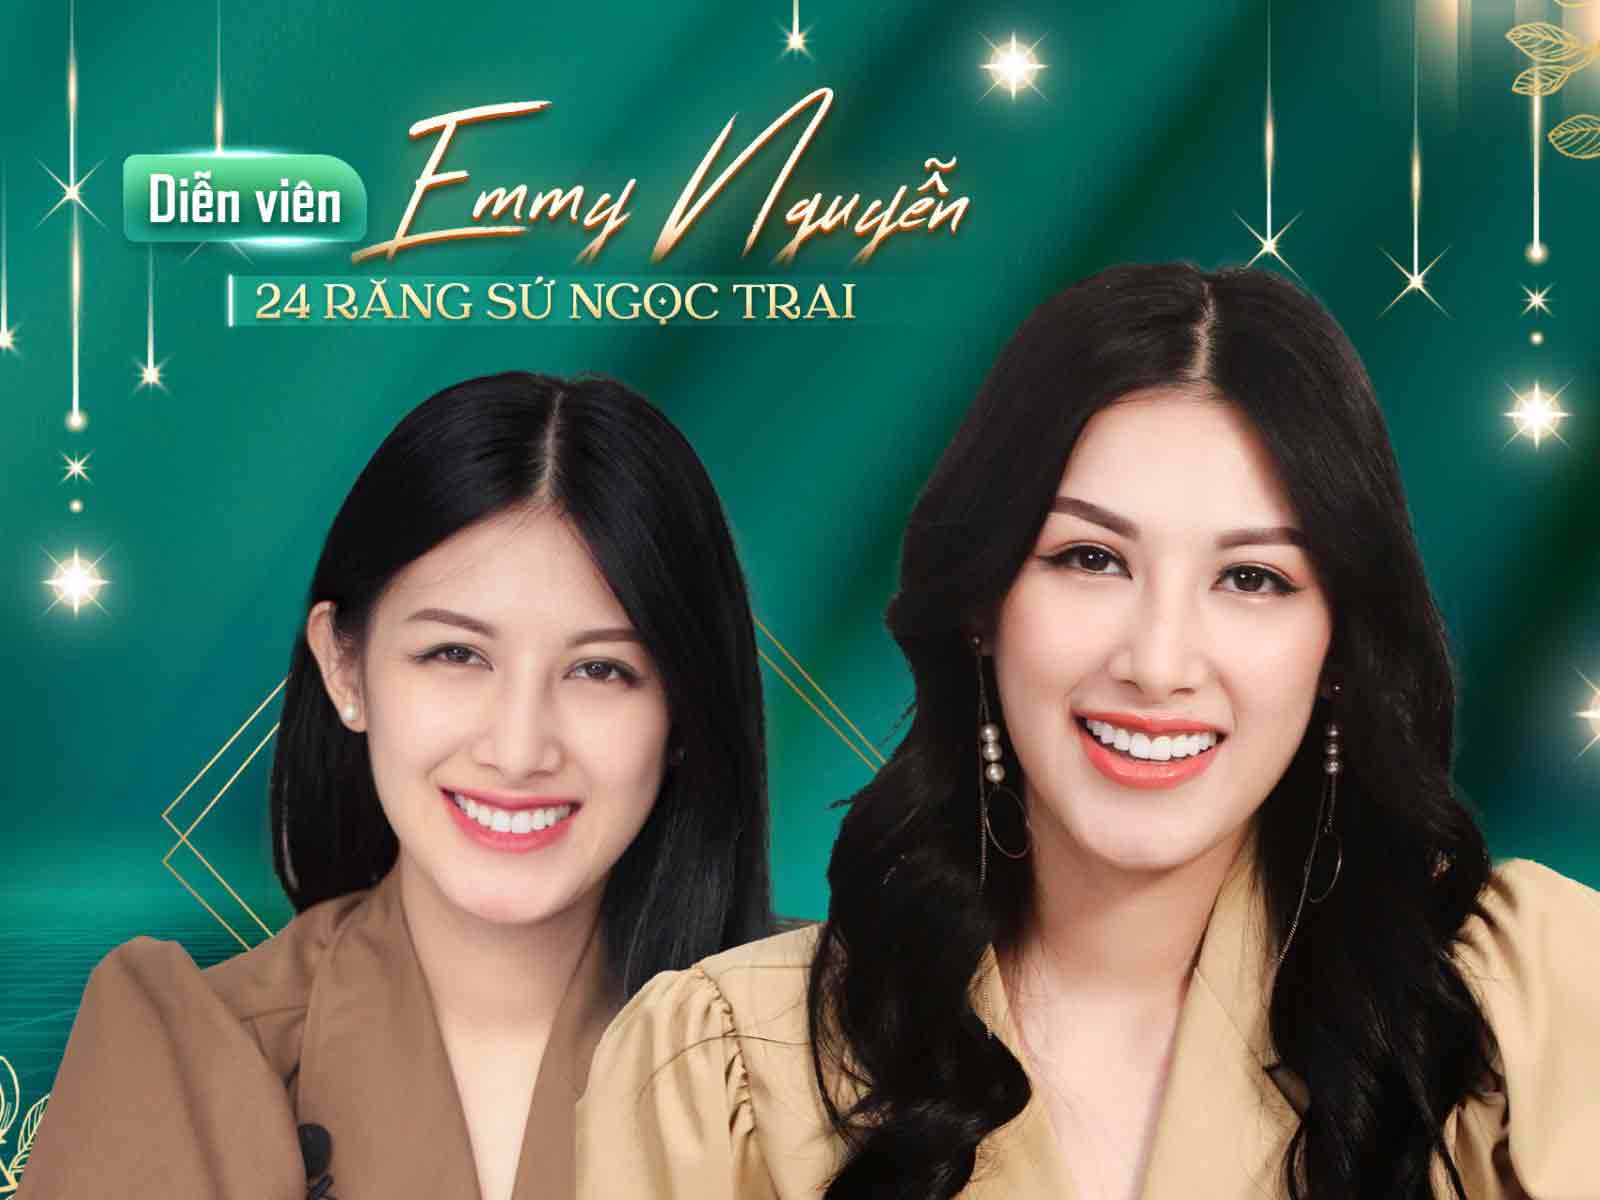 diễn viên Emmy Nguyễn làm răng sứ tại nha khoa casino online uy tín



